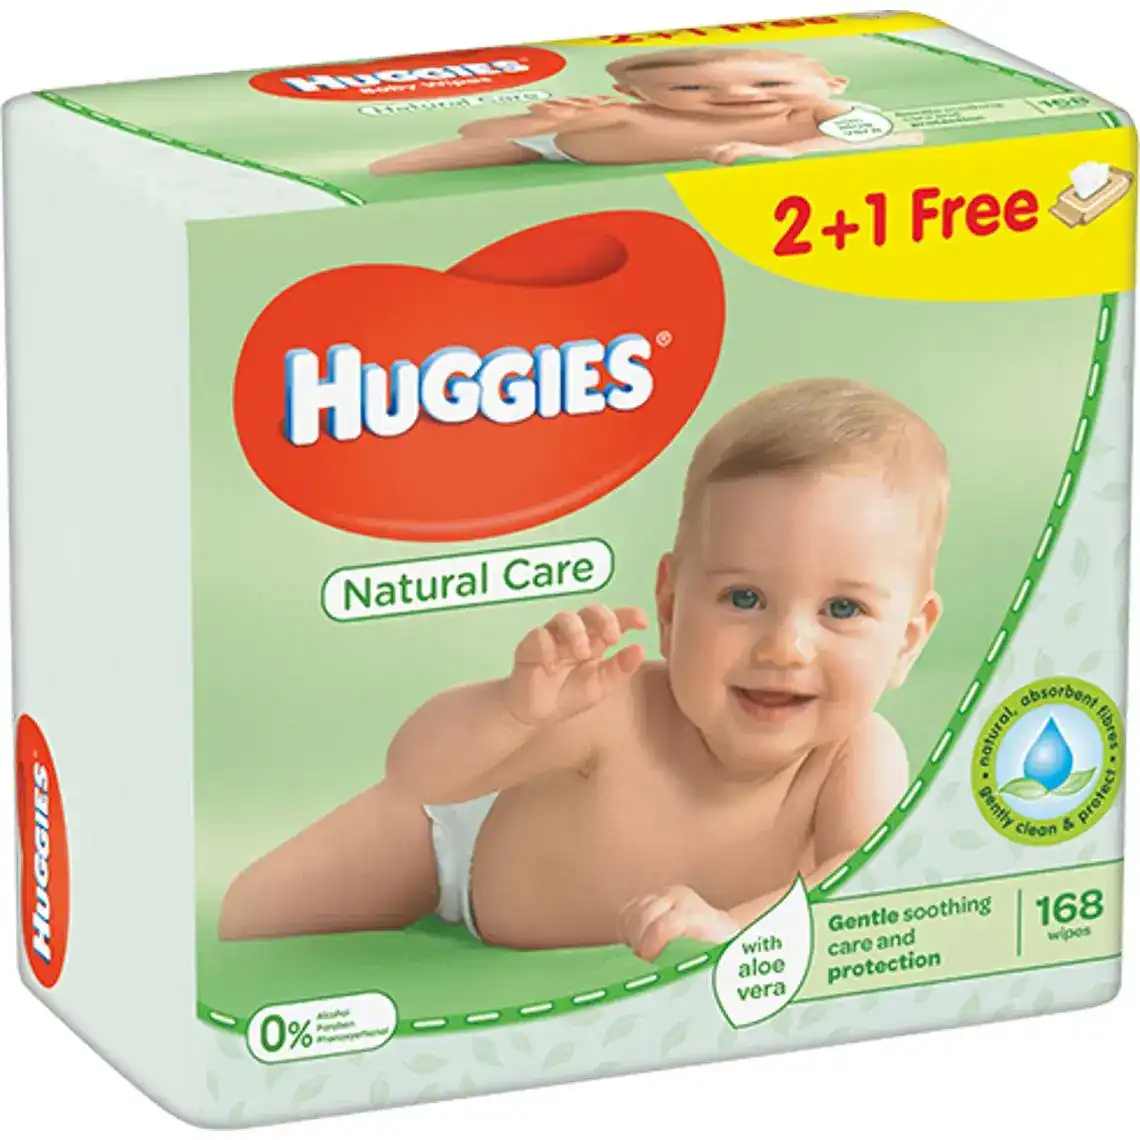 Серветки Huggies Natural Care вологі для дітей 168 шт